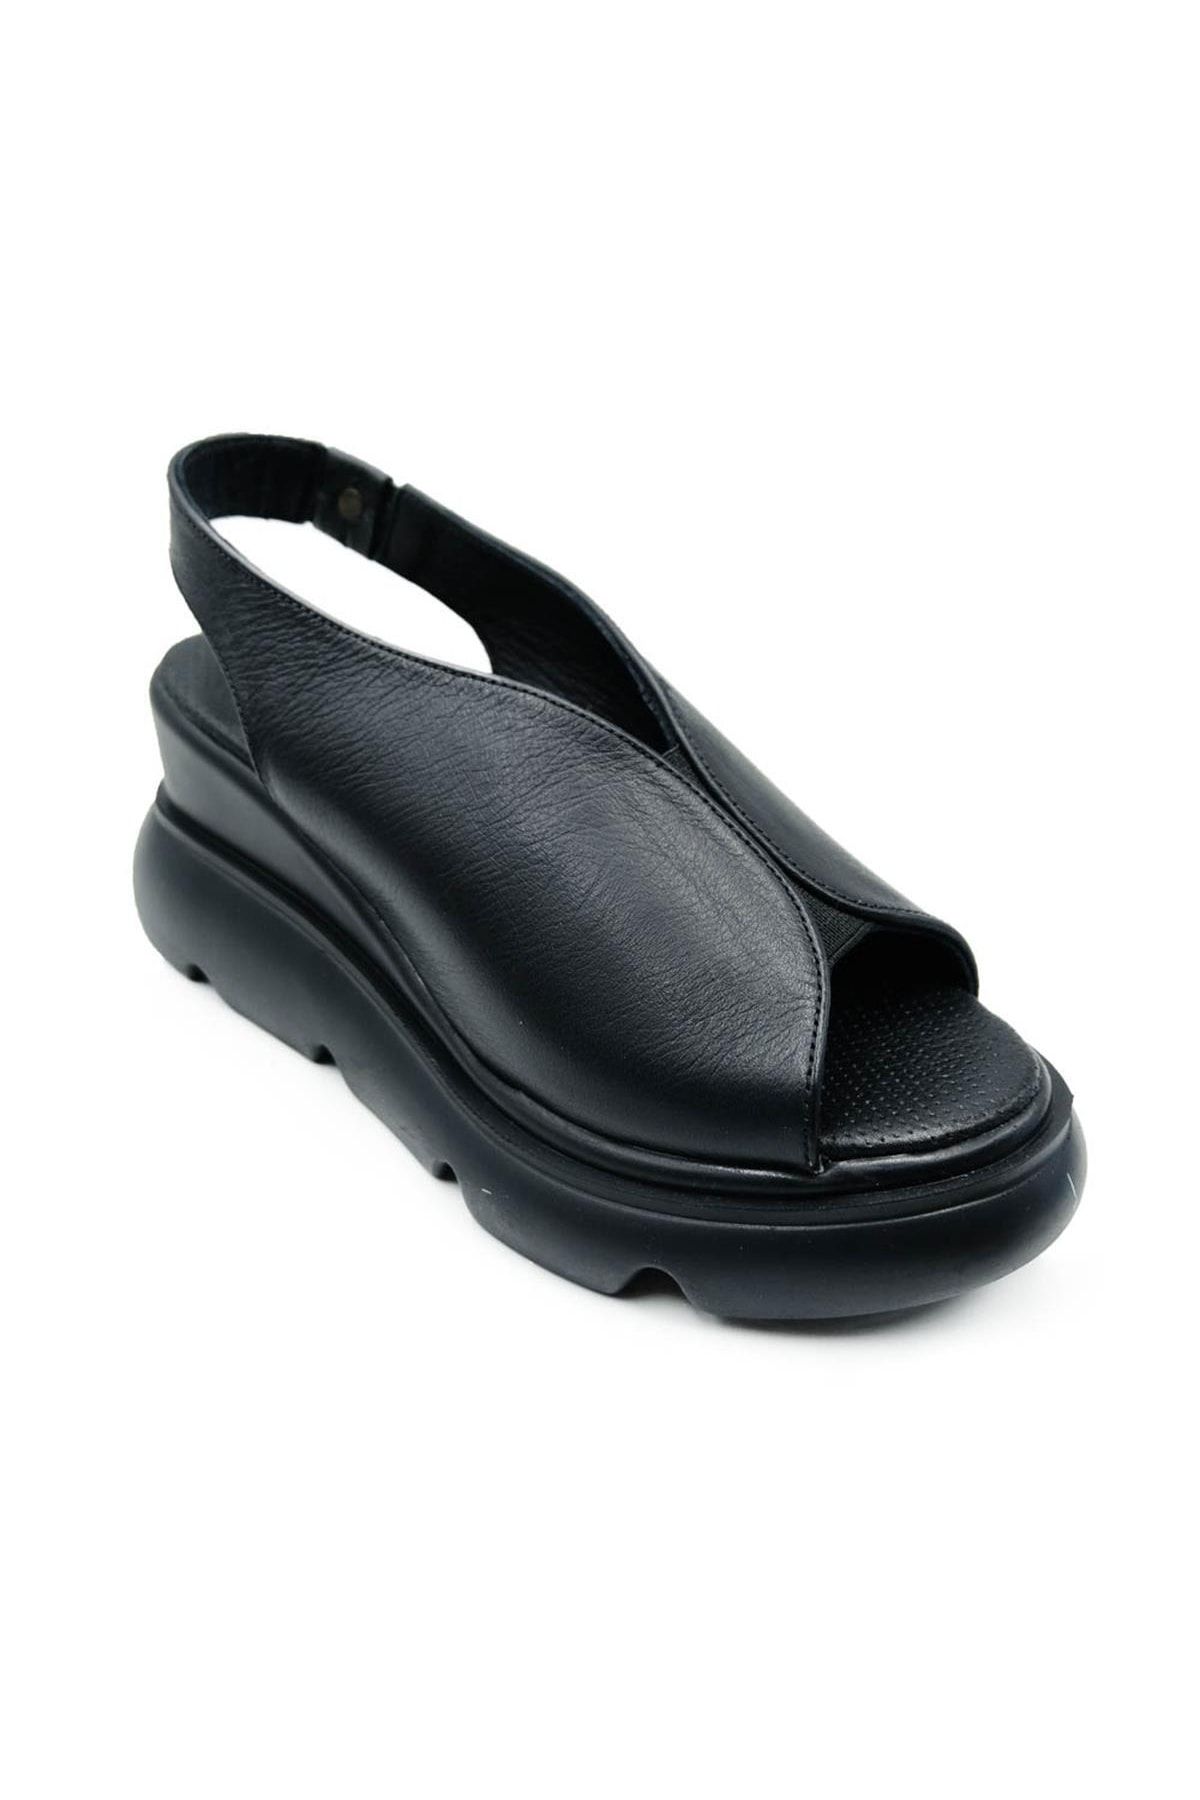 Pierre Cardin Kadın Gerçek Deri Dolgu Topuk Sandalet Pc-7179